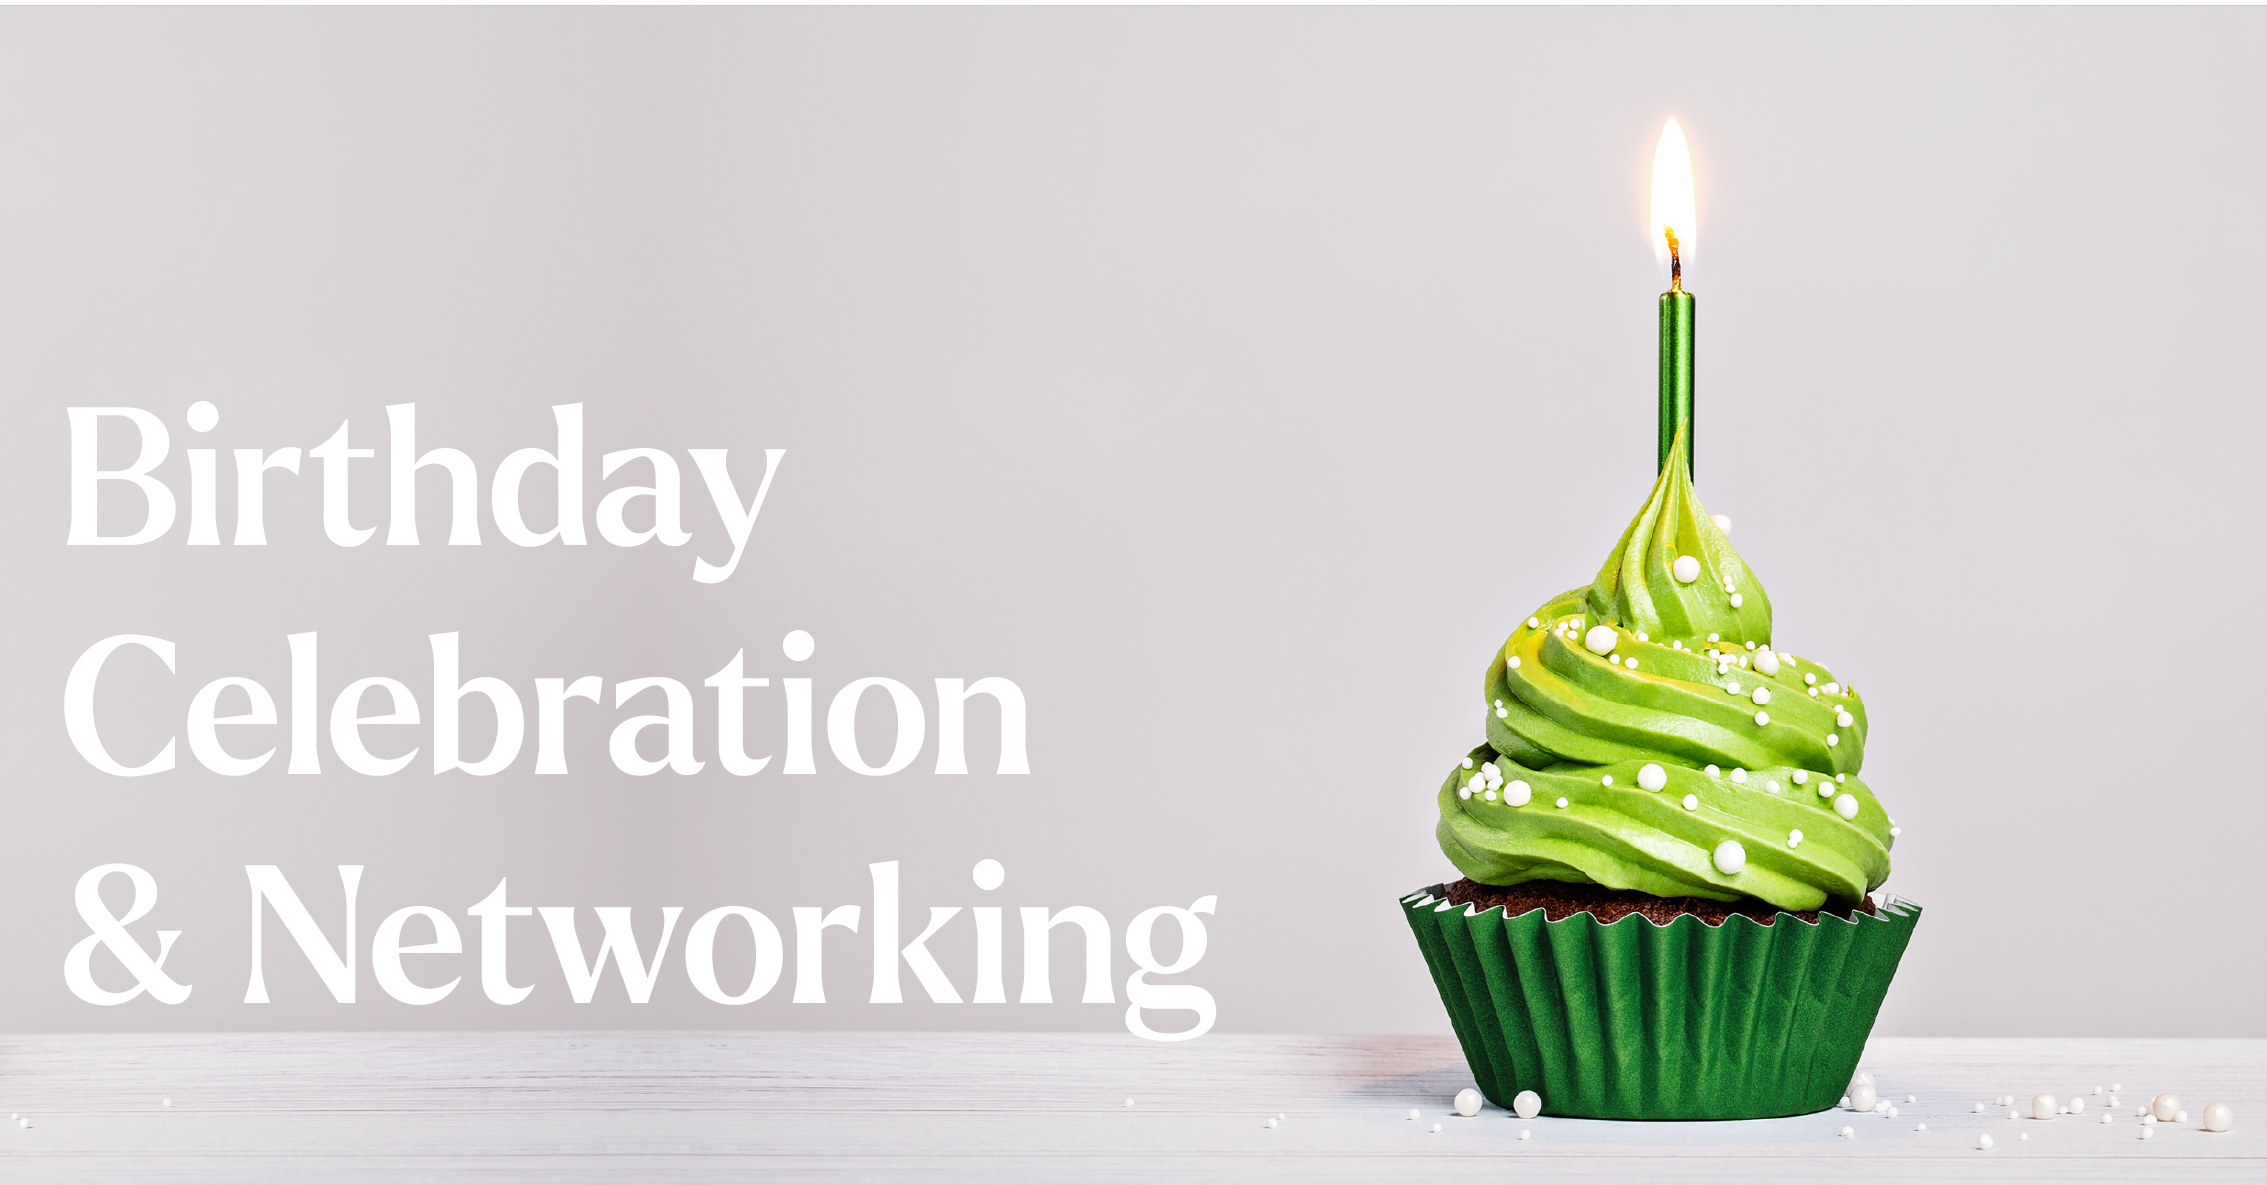 Birthday Celebration & Networking